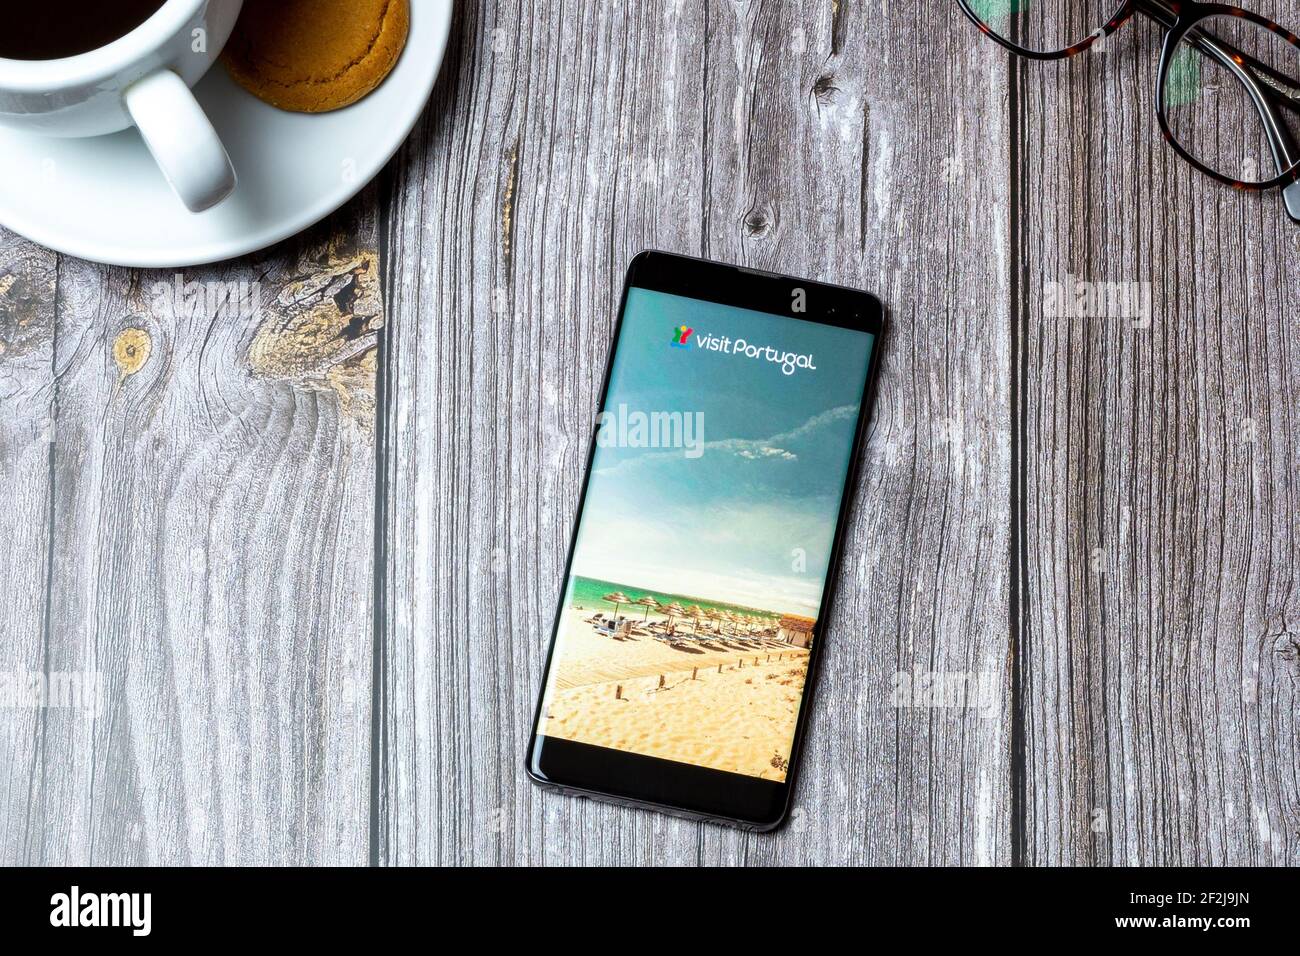 Un téléphone portable ou mobile posé sur un bois Table avec l'application Visit Portugal ouverte à l'écran Banque D'Images